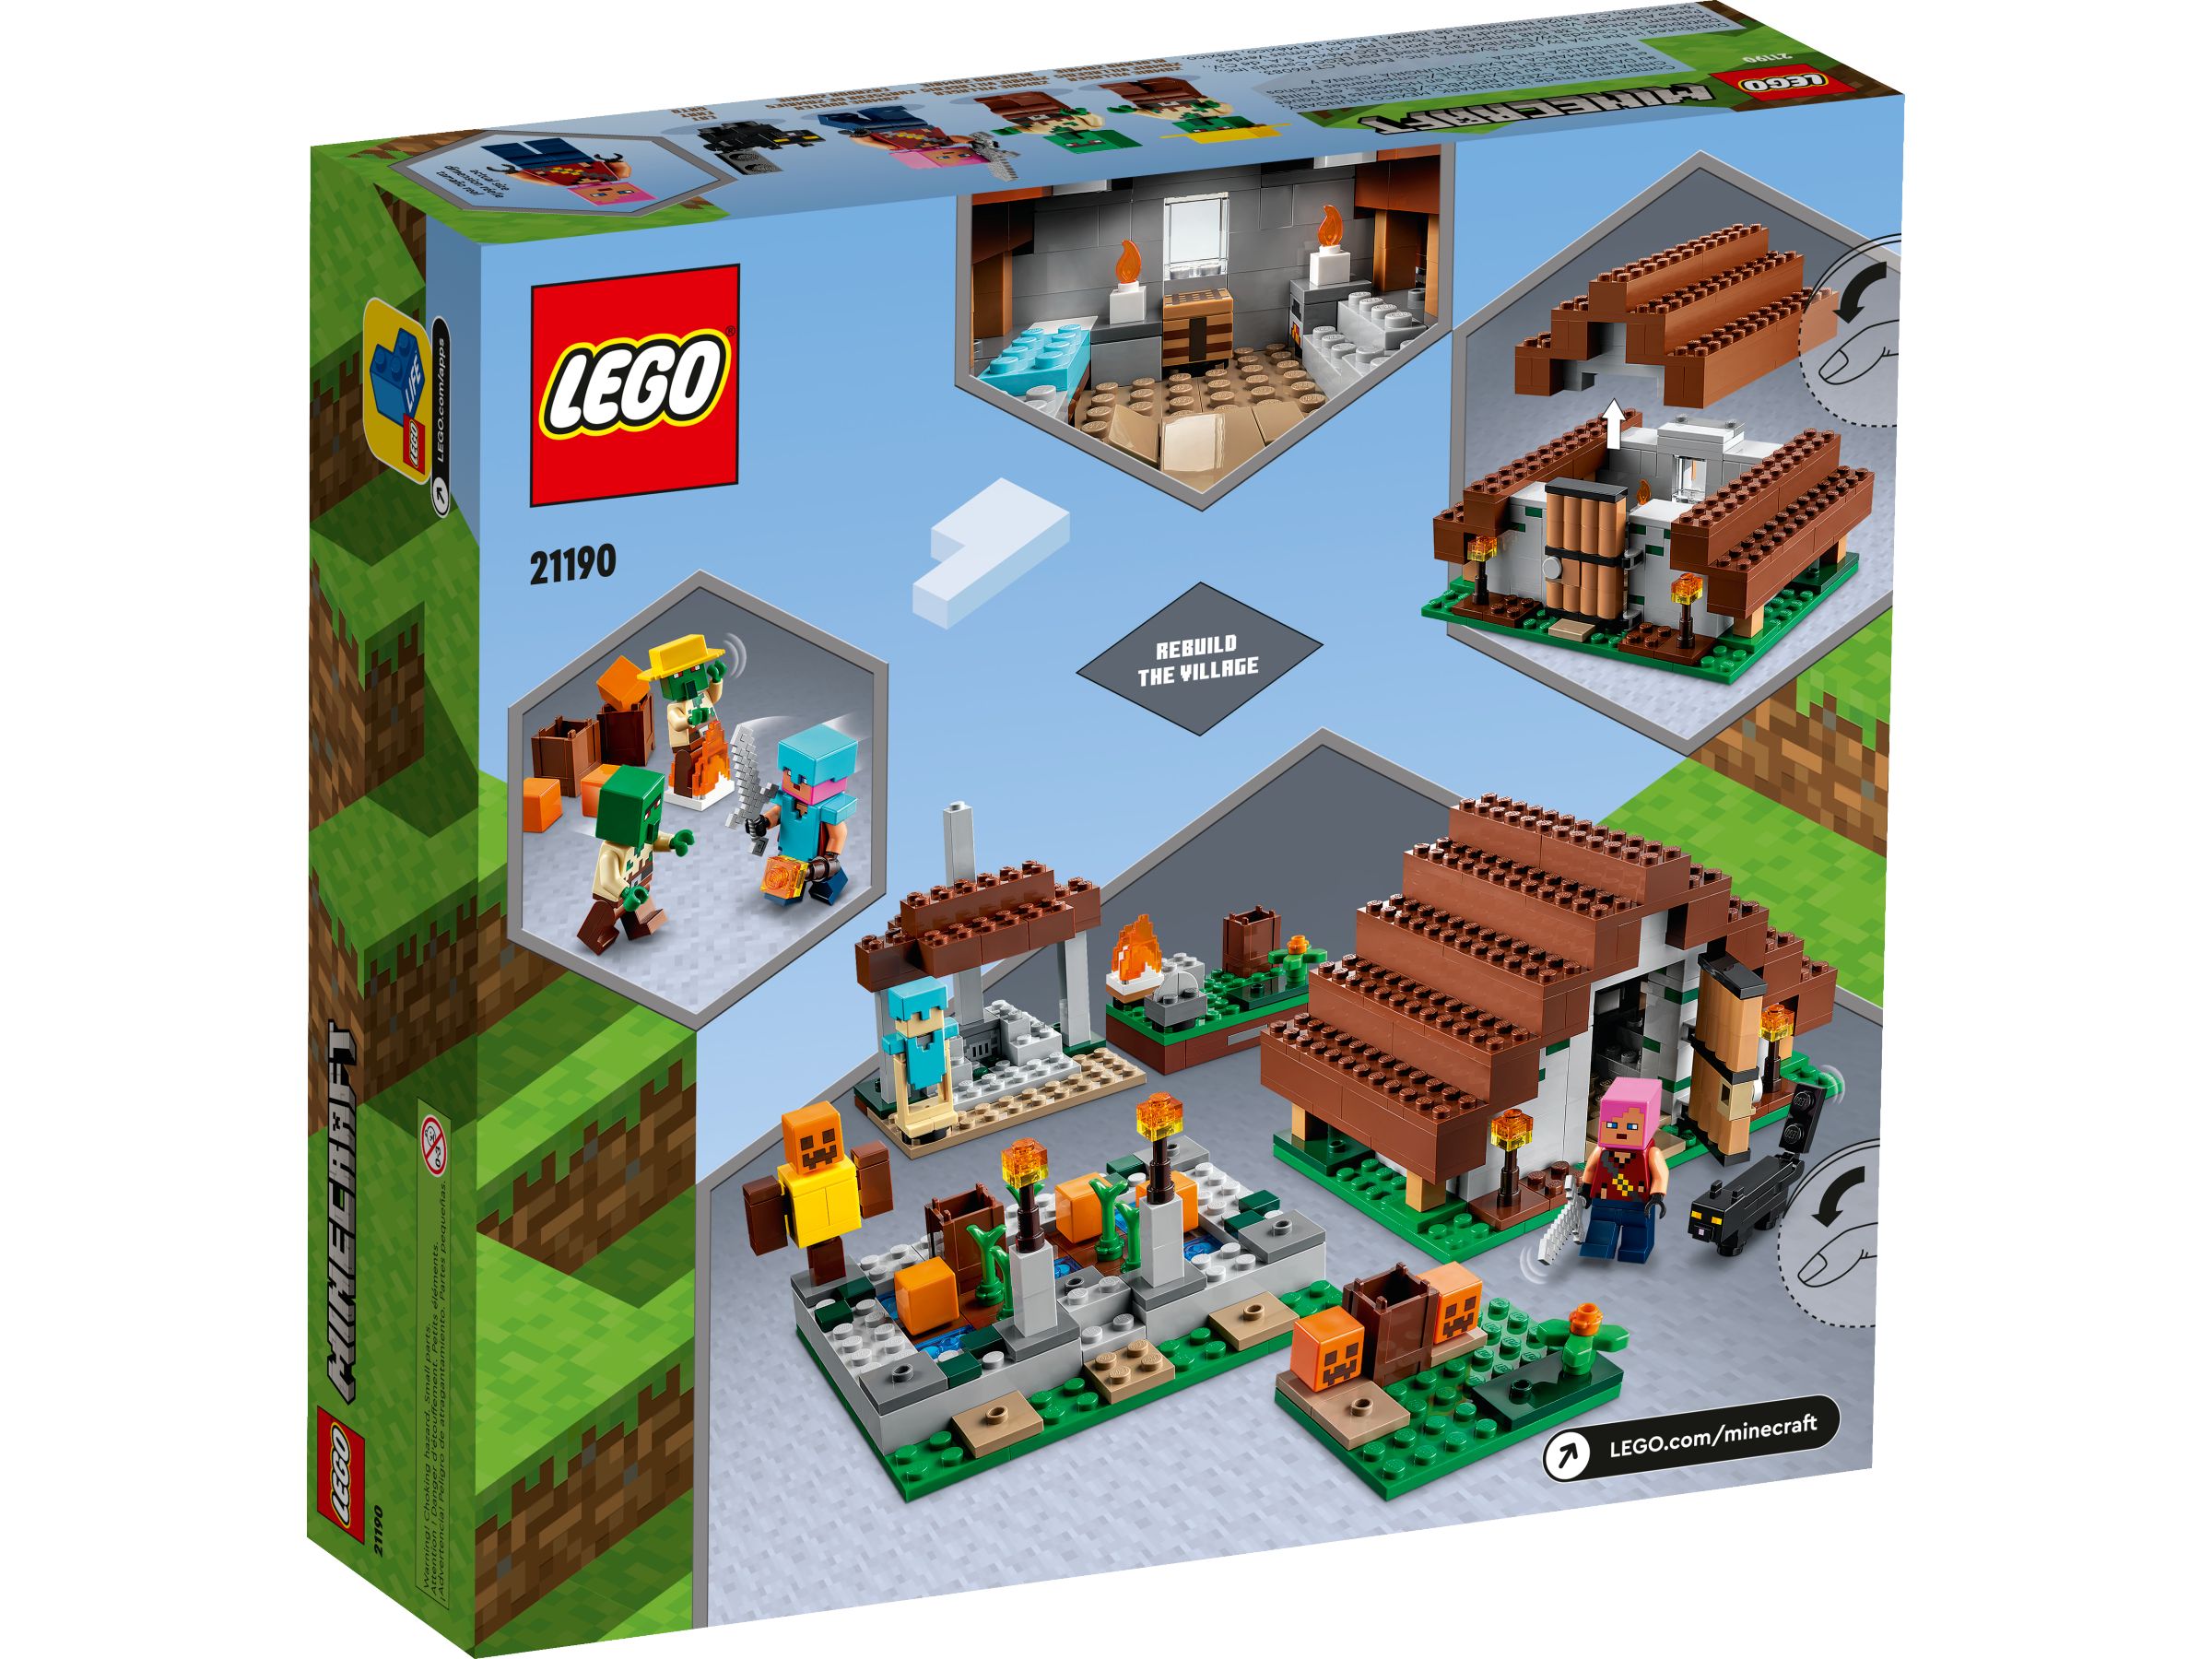 LEGO Minecraft 21190 The Abandoned Village LEGO_21190_alt2.jpg